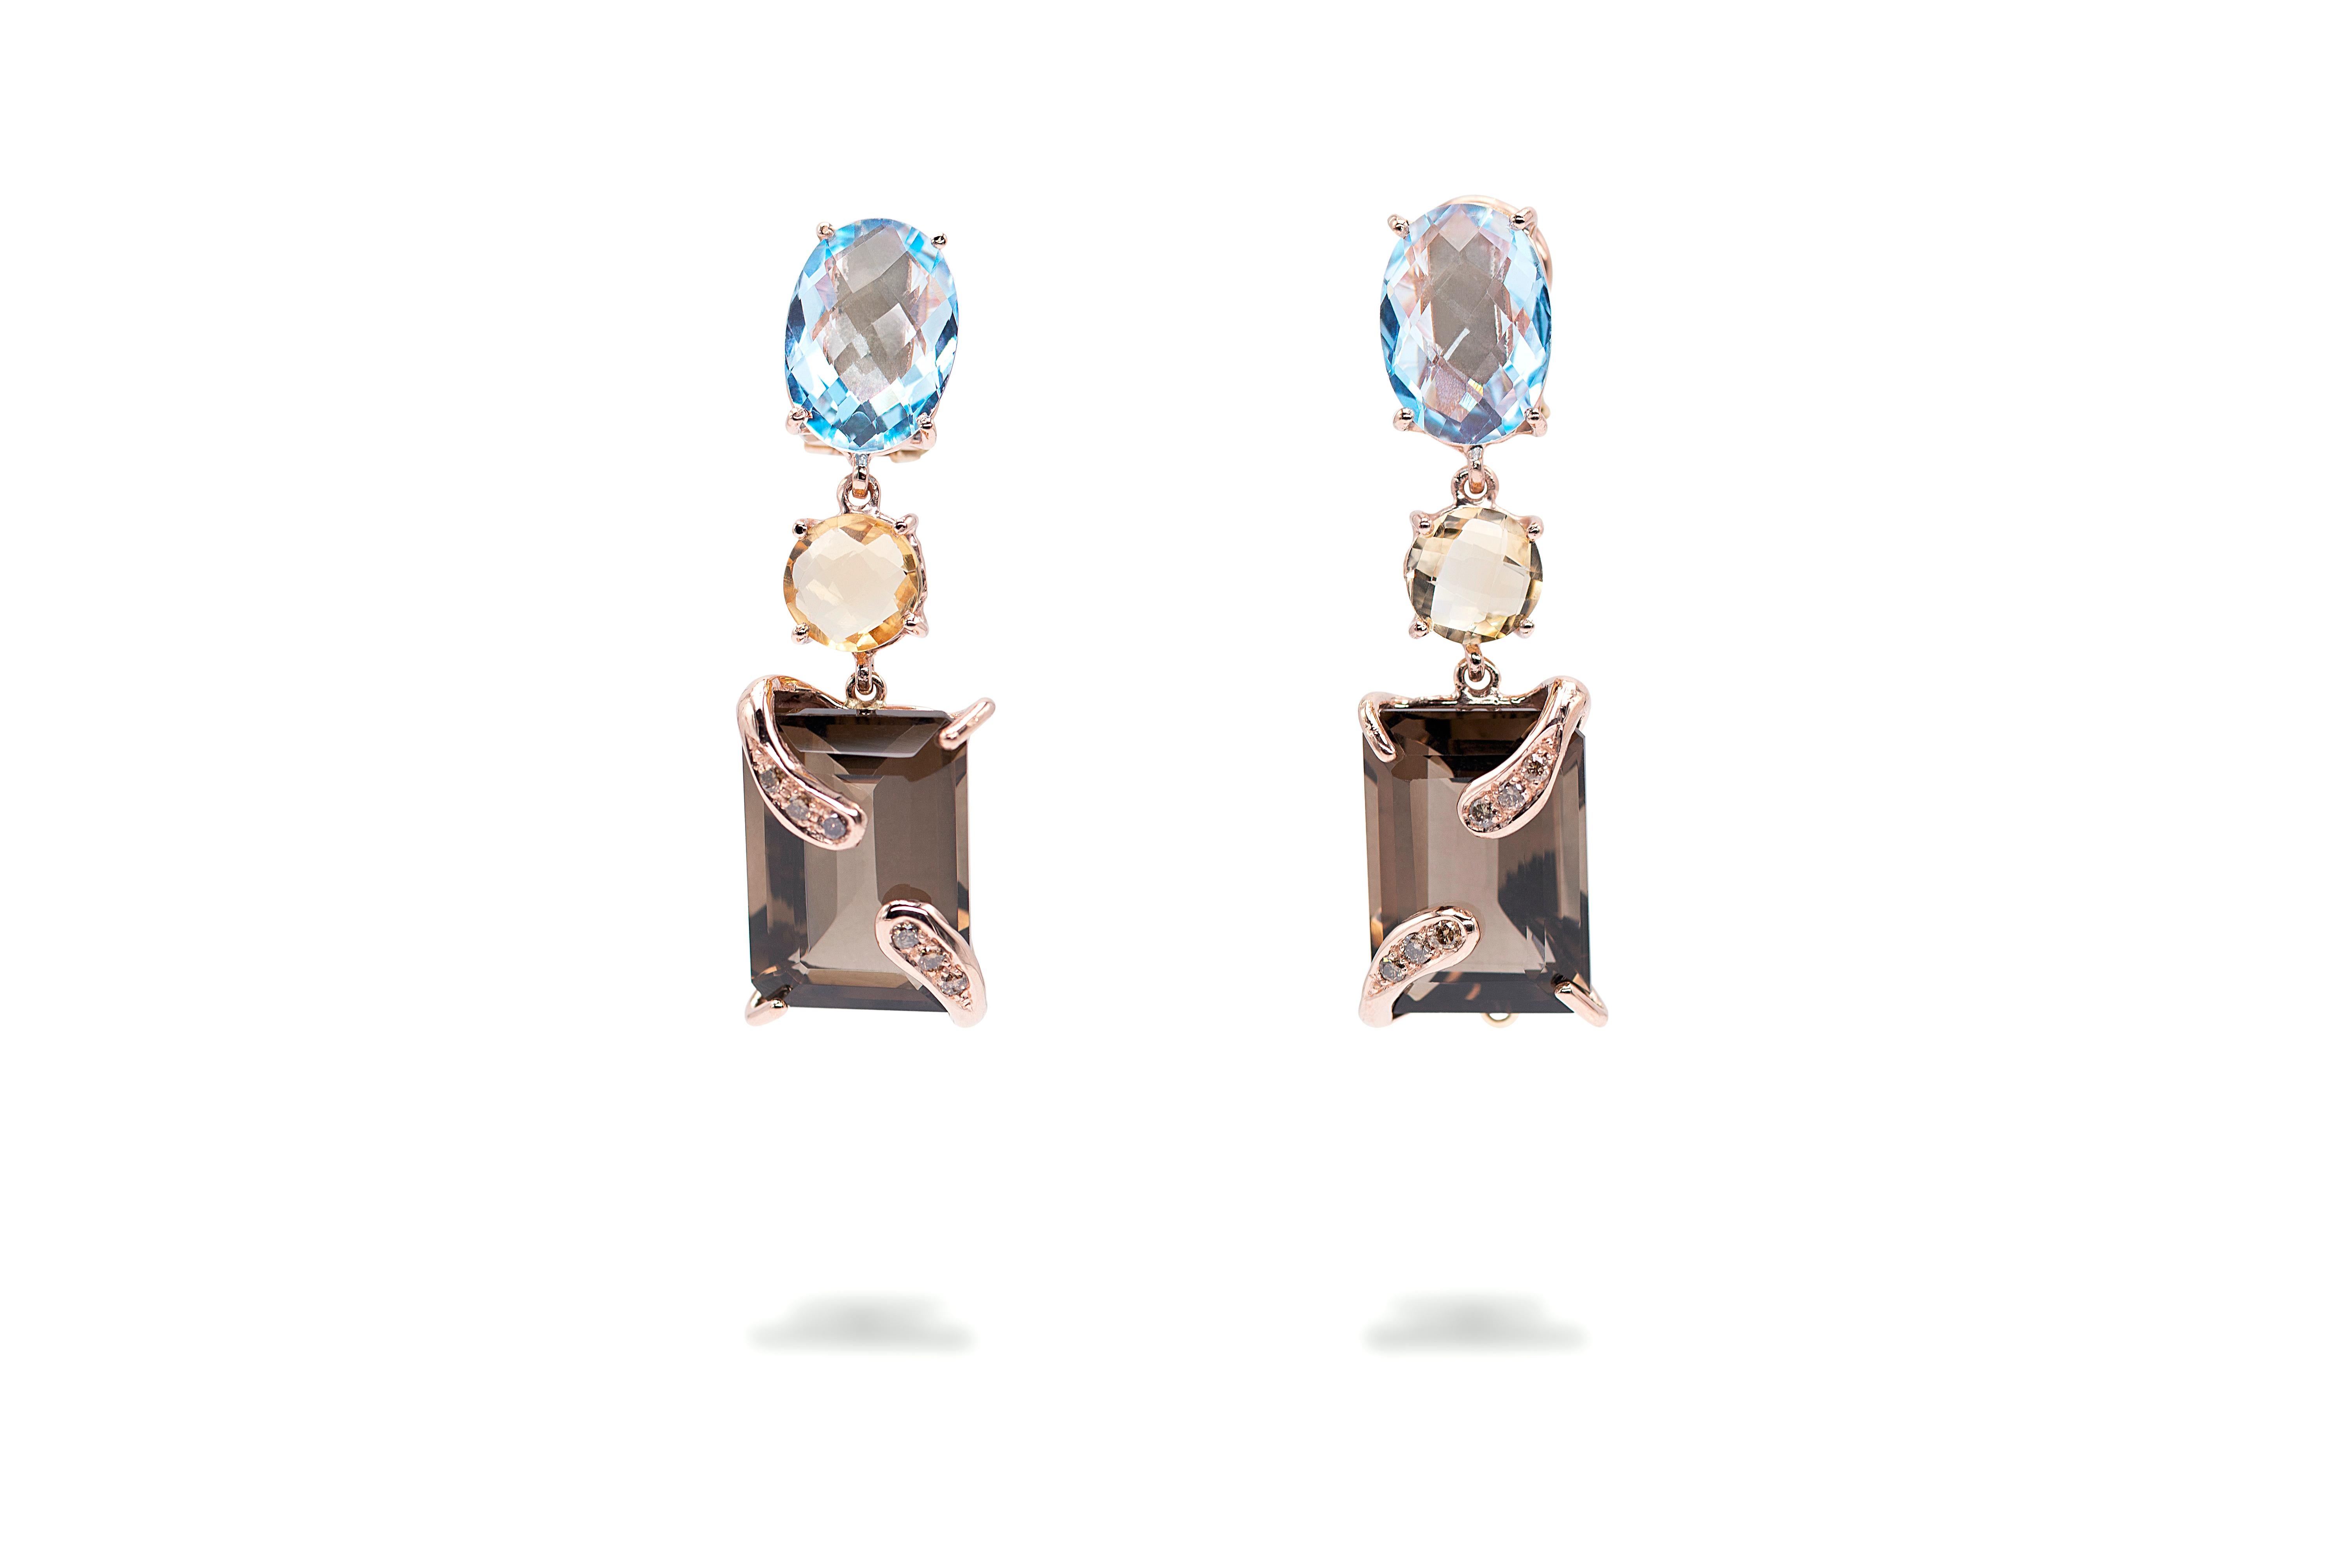  Boucles d'oreilles pendantes en or rose 18 carats avec topaze bleue, citrine et diamants bruns